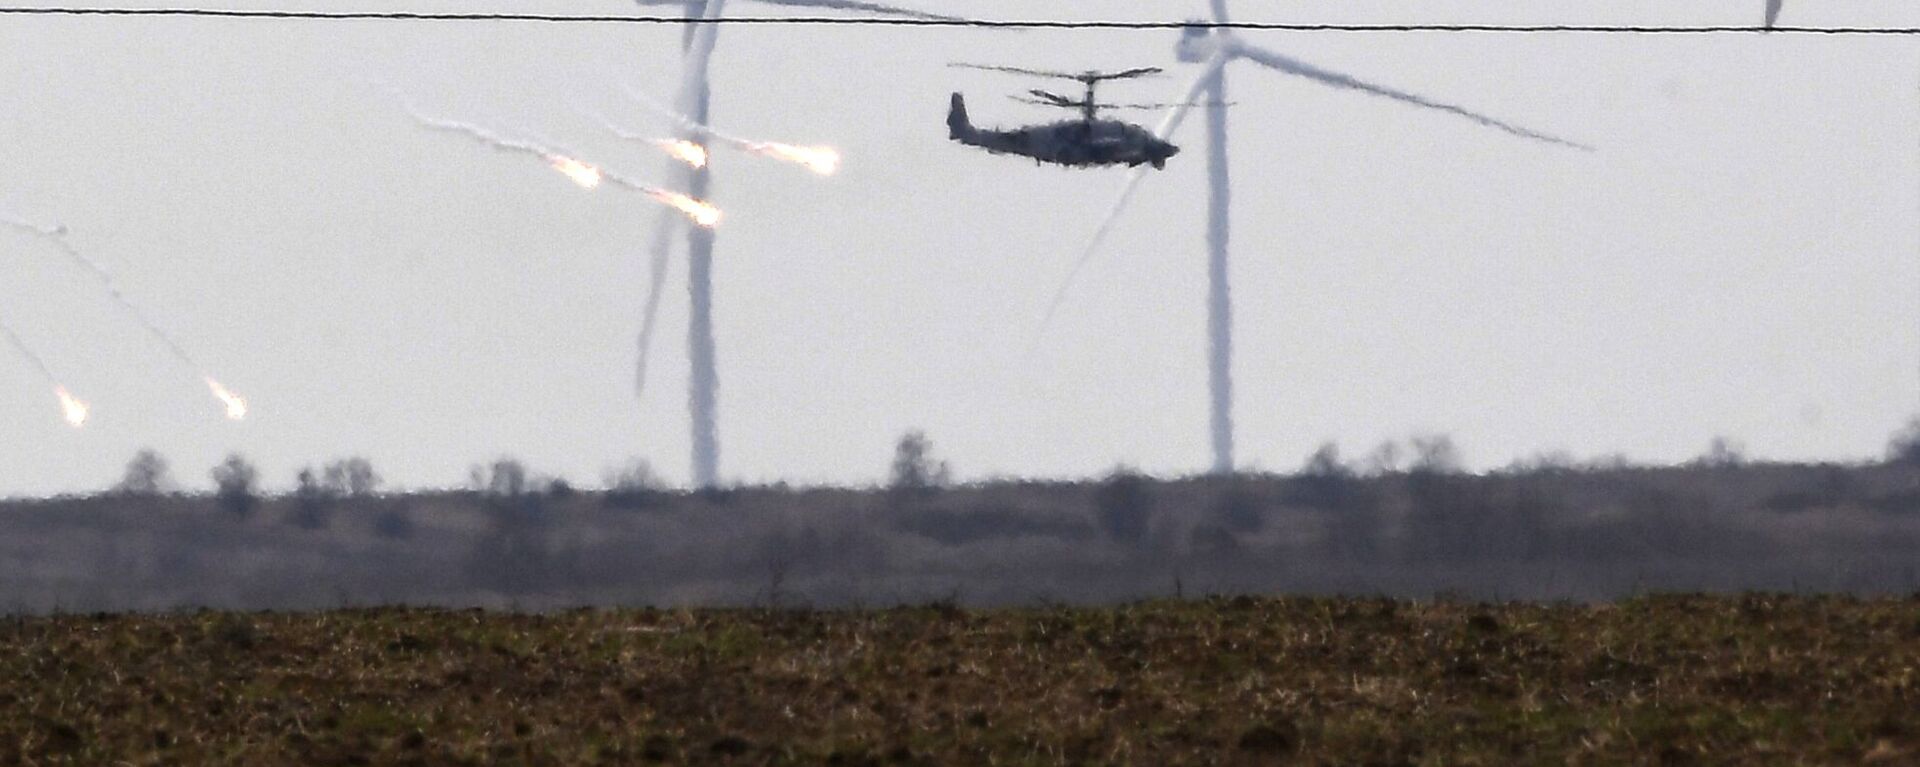 مروحيات هجومية من طراز مي-24 تابعة للقوات الجوية الروسية تحلق في سماء أرمينيا 28 فبراير 2022 - سبوتنيك عربي, 1920, 28.03.2022